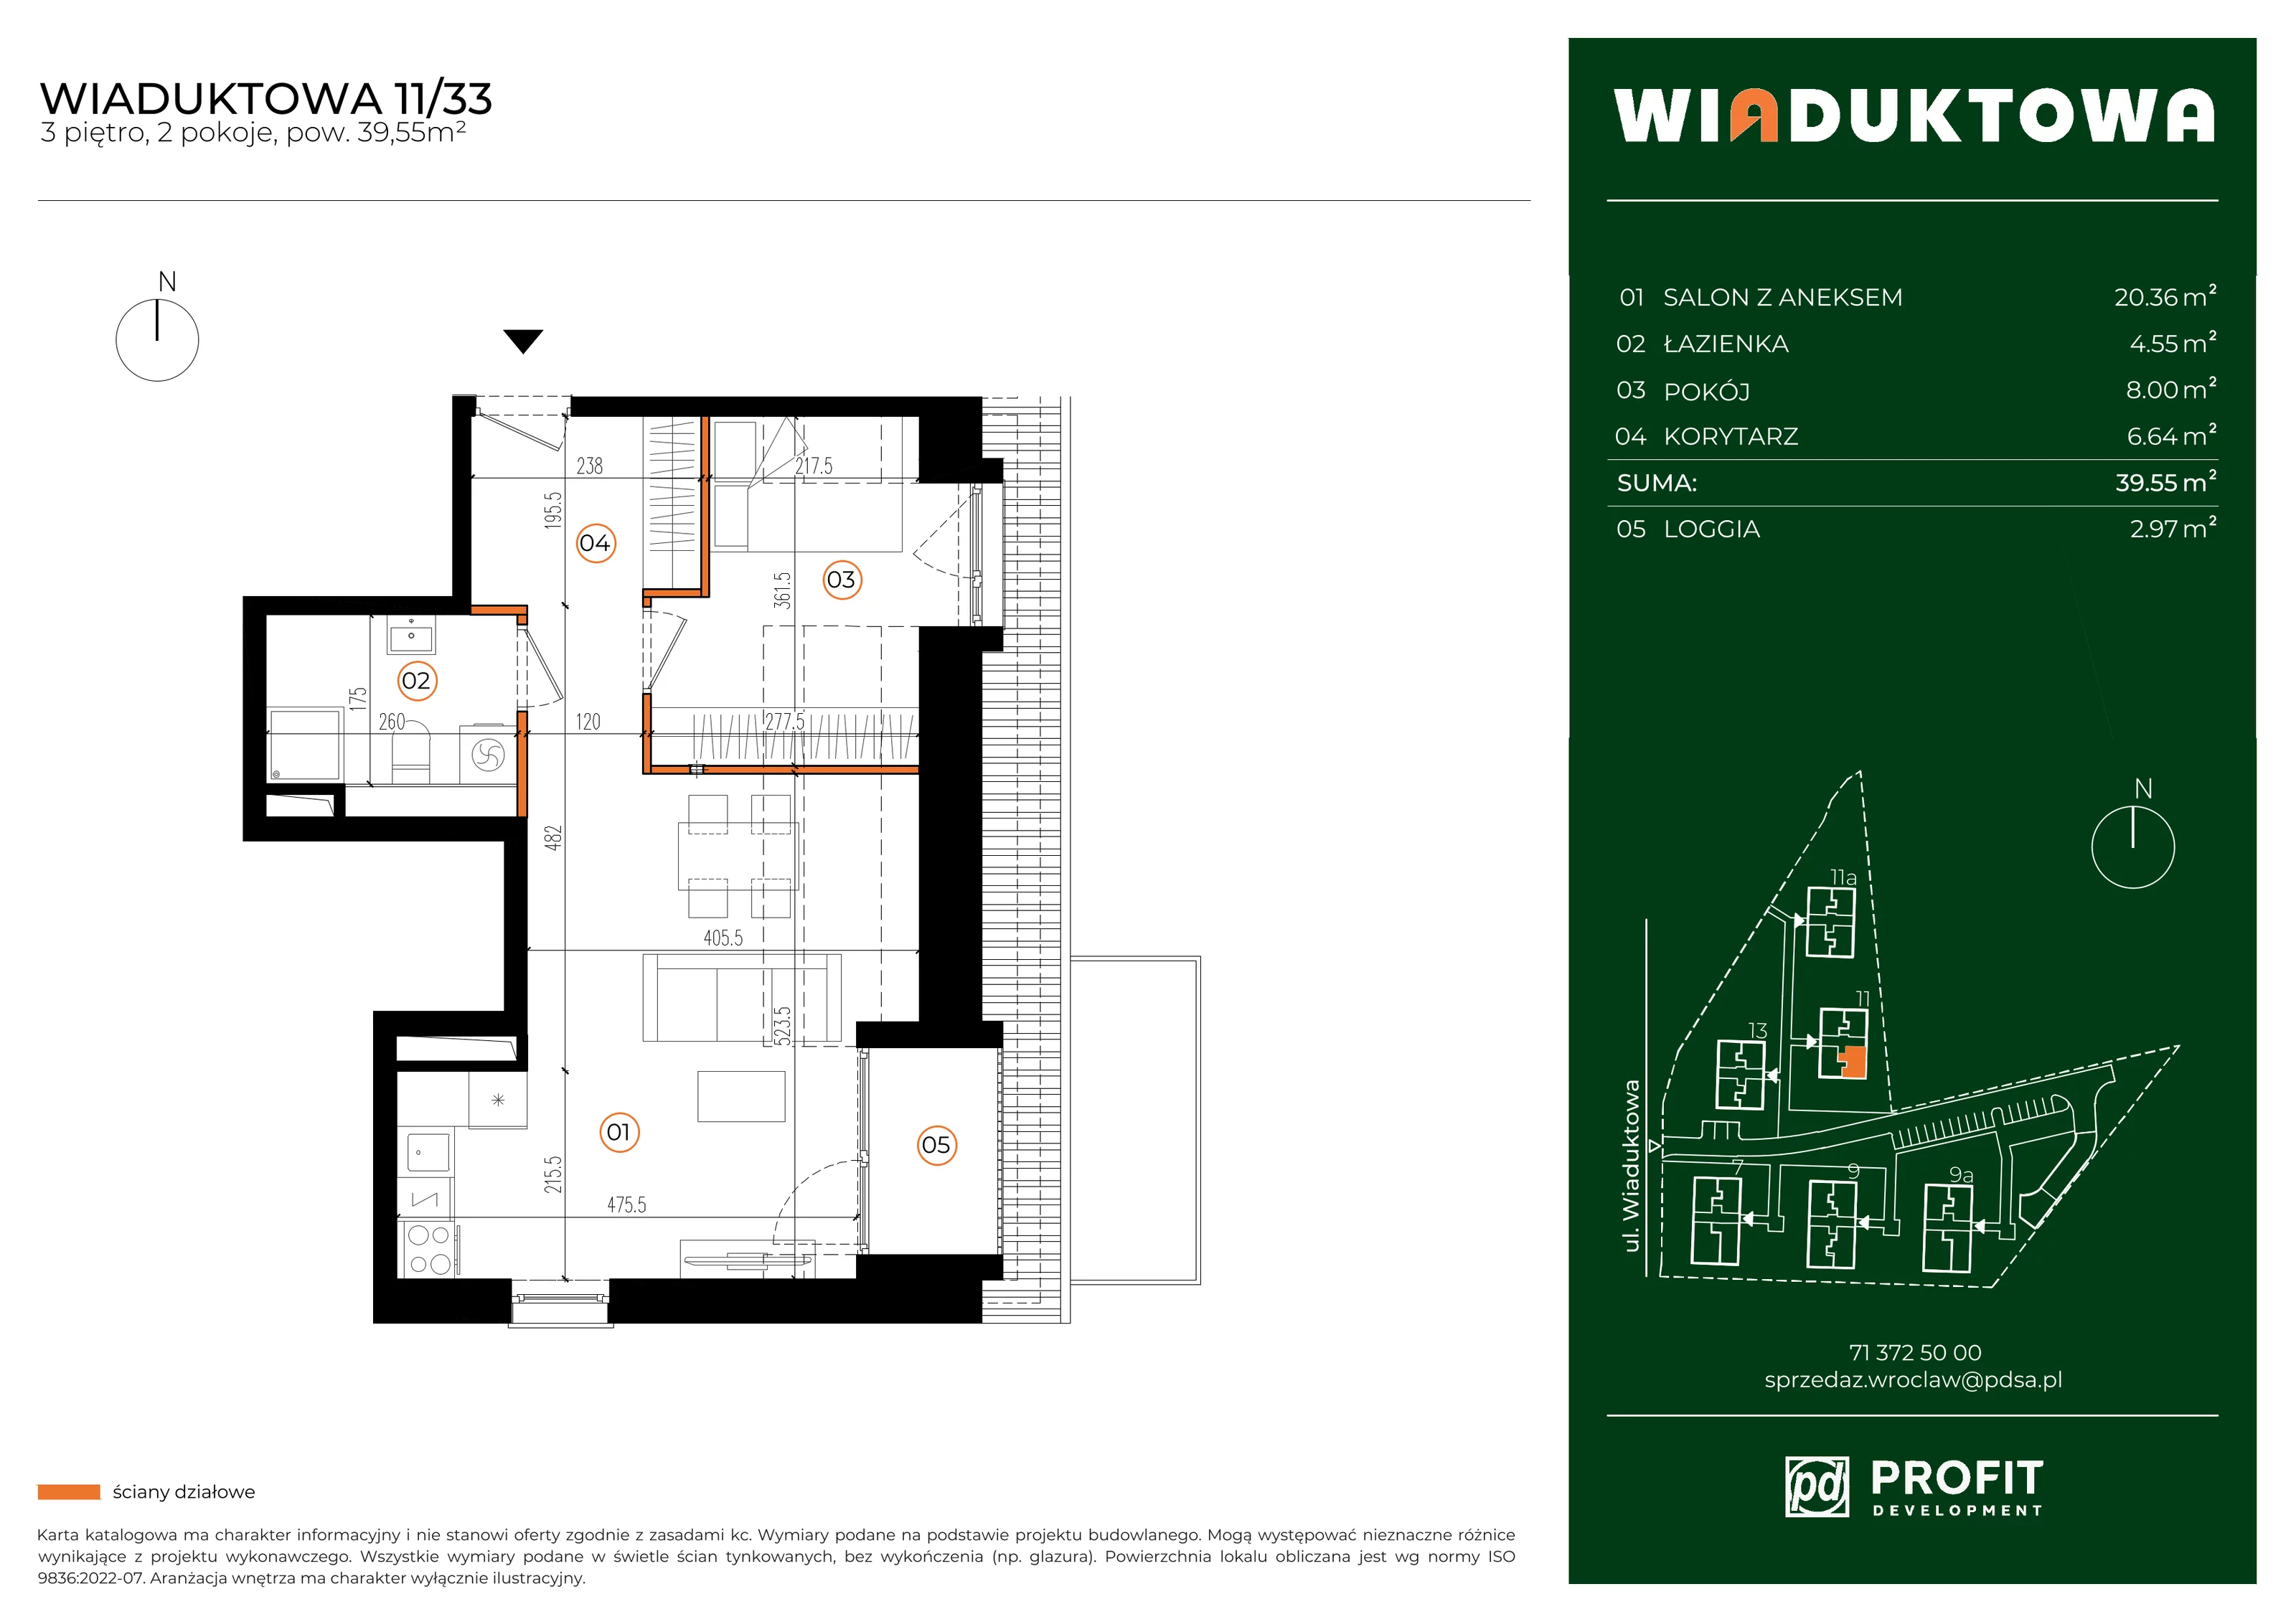 Mieszkanie 39,55 m², piętro 3, oferta nr WI/11/33, Wiaduktowa, Wrocław, Krzyki-Partynice, Krzyki, ul. Wiaduktowa